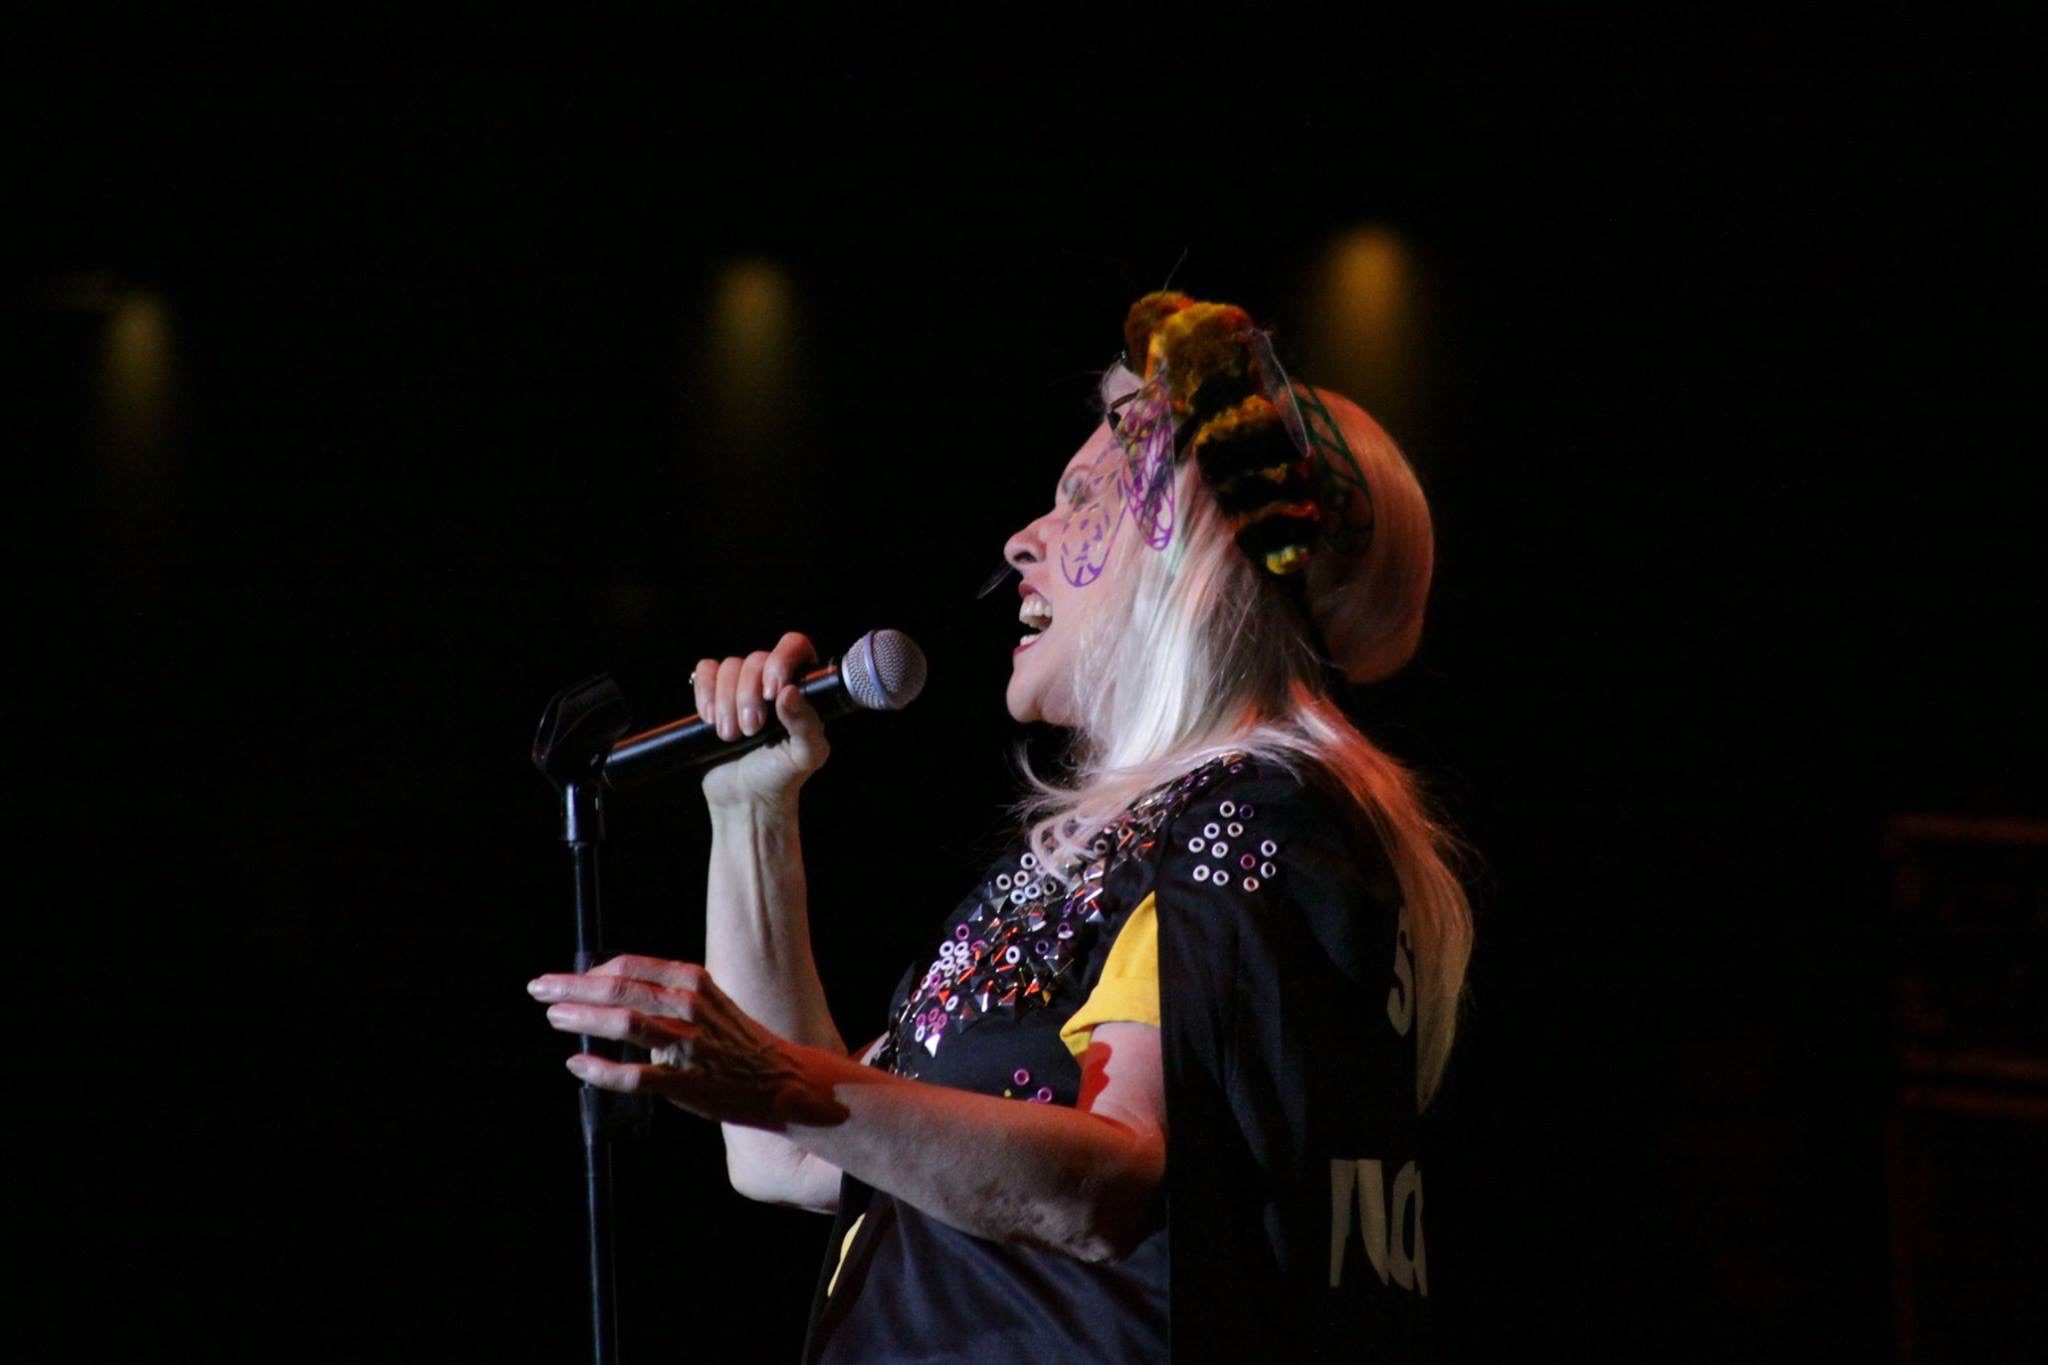 Debbie Harry live in concert